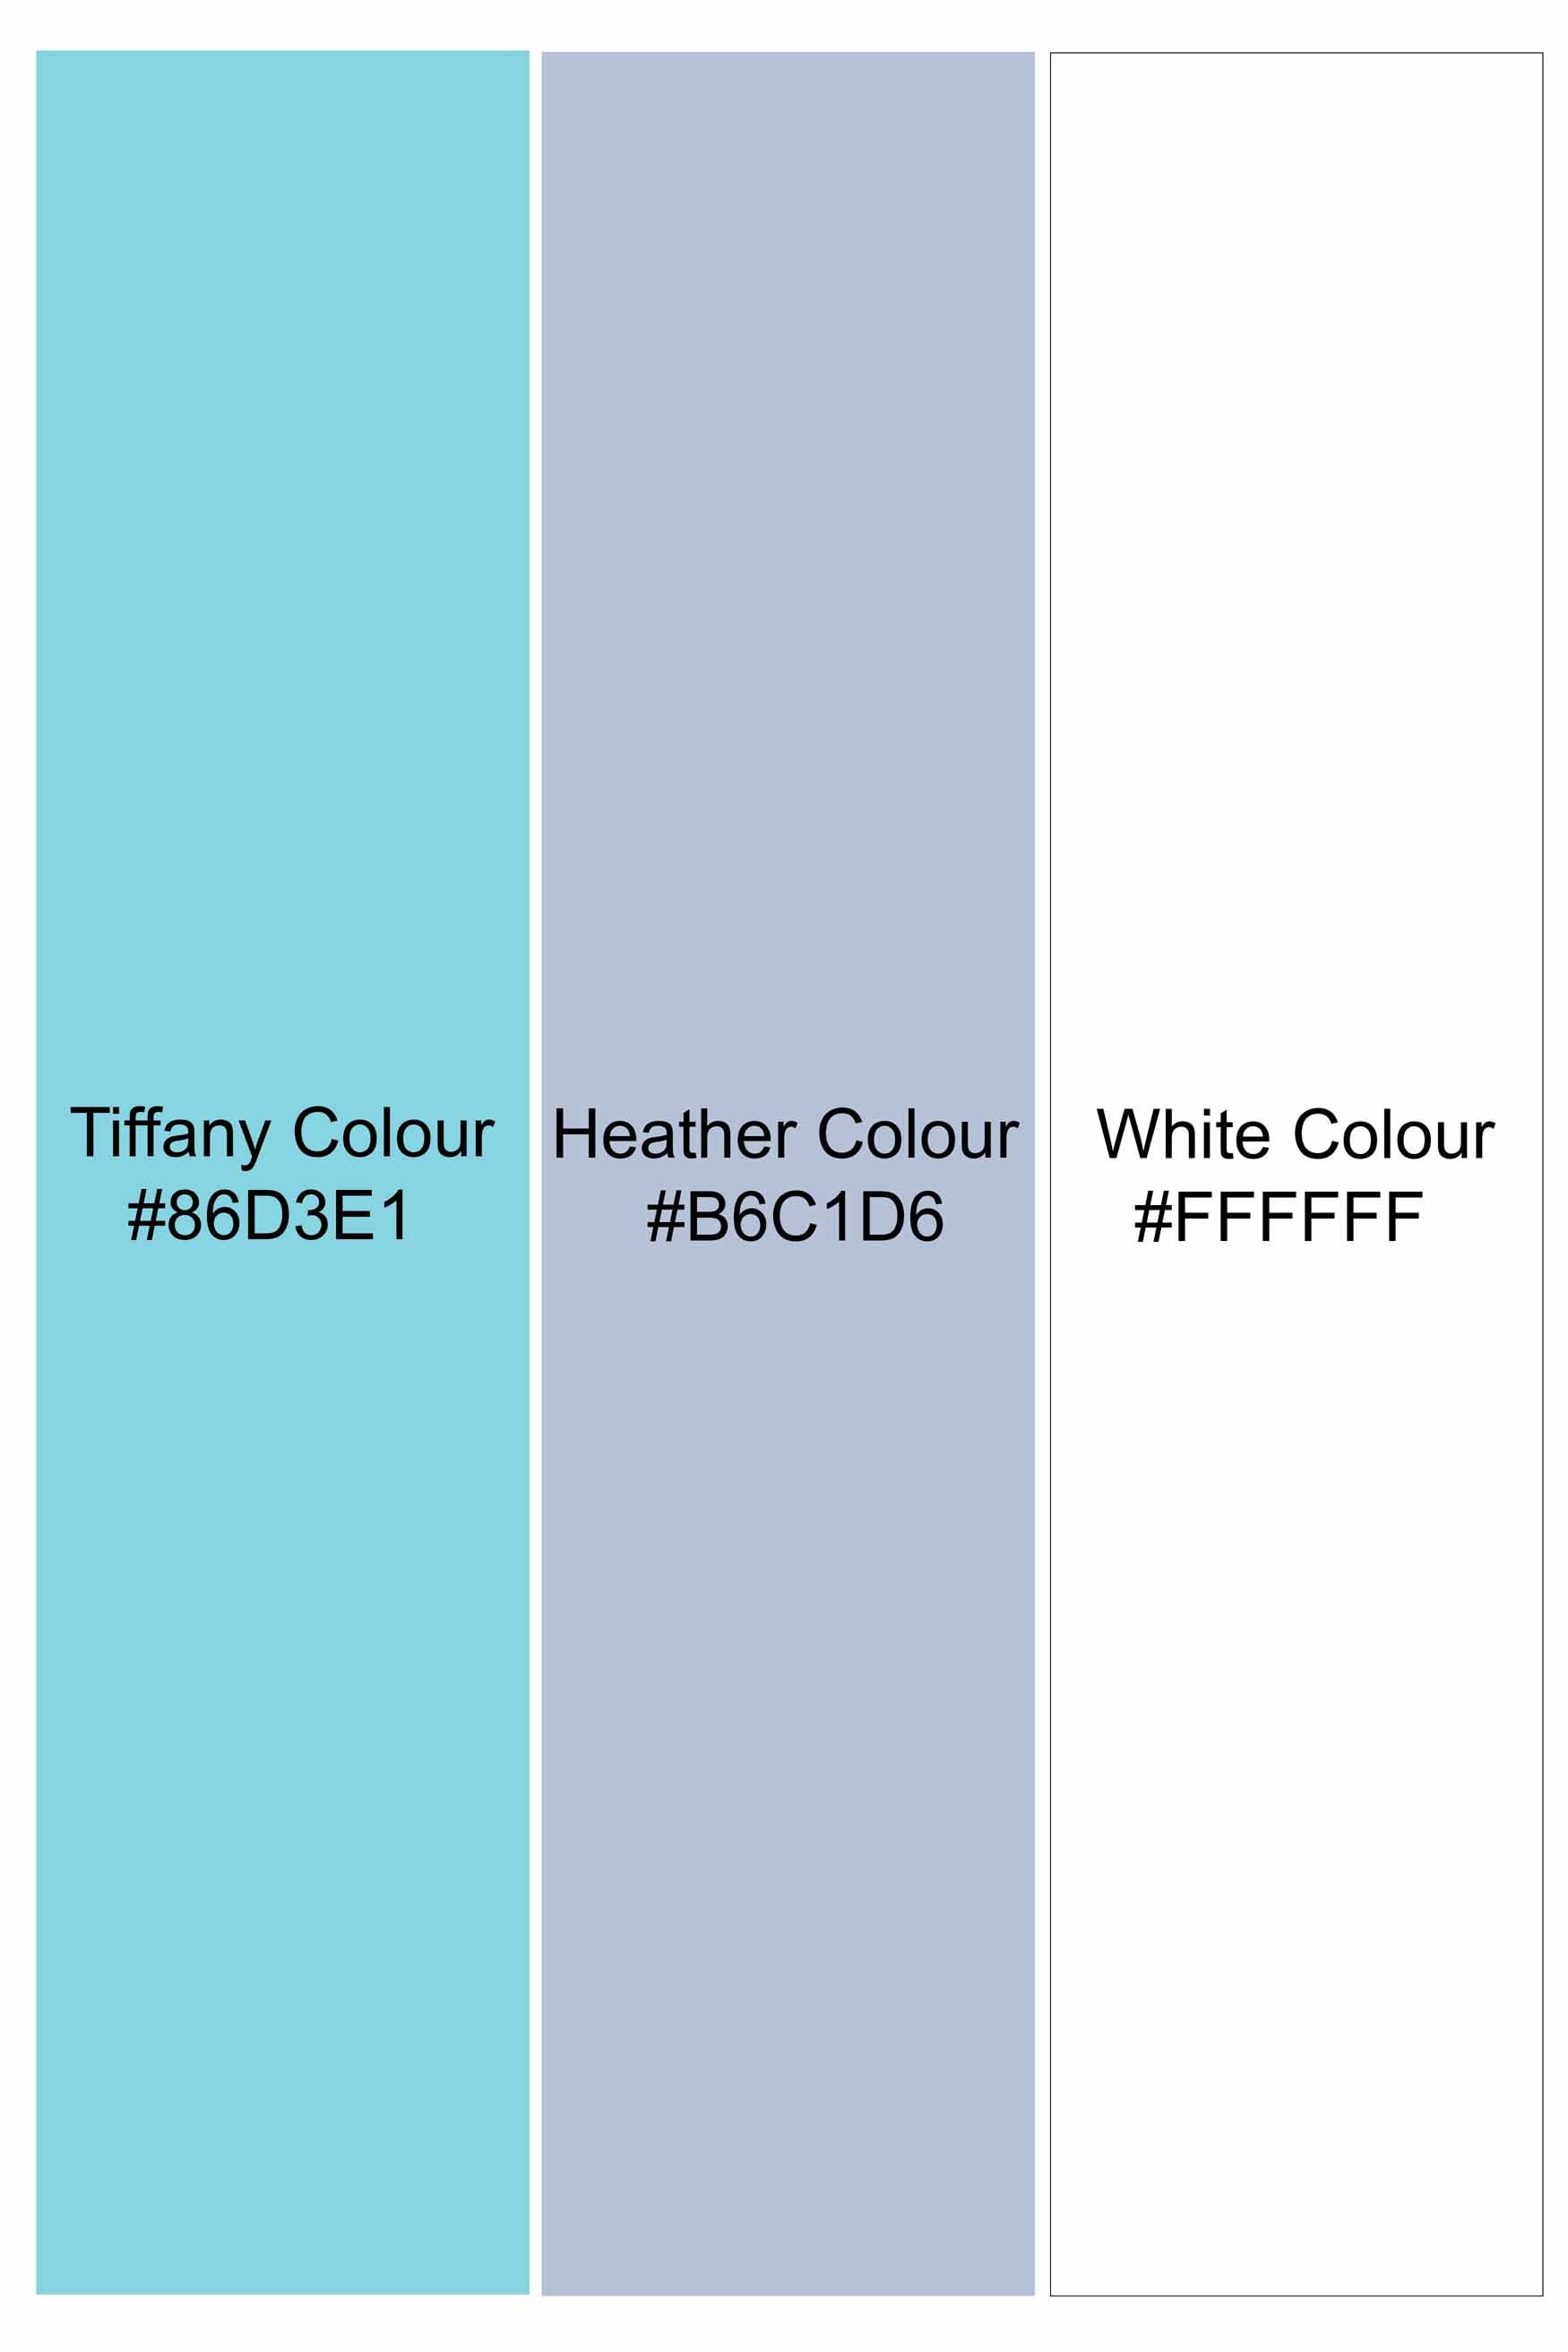 Tiffany Blue and Heather Gray Checkered with Scorpion Patchwork Twill Premium Cotton Designer Shirt 6224-BD-E337-38, 6224-BD-E337-H-38, 6224-BD-E337-39, 6224-BD-E337-H-39, 6224-BD-E337-40, 6224-BD-E337-H-40, 6224-BD-E337-42, 6224-BD-E337-H-42, 6224-BD-E337-44, 6224-BD-E337-H-44, 6224-BD-E337-46, 6224-BD-E337-H-46, 6224-BD-E337-48, 6224-BD-E337-H-48, 6224-BD-E337-50, 6224-BD-E337-H-50, 6224-BD-E337-52, 6224-BD-E337-H-52